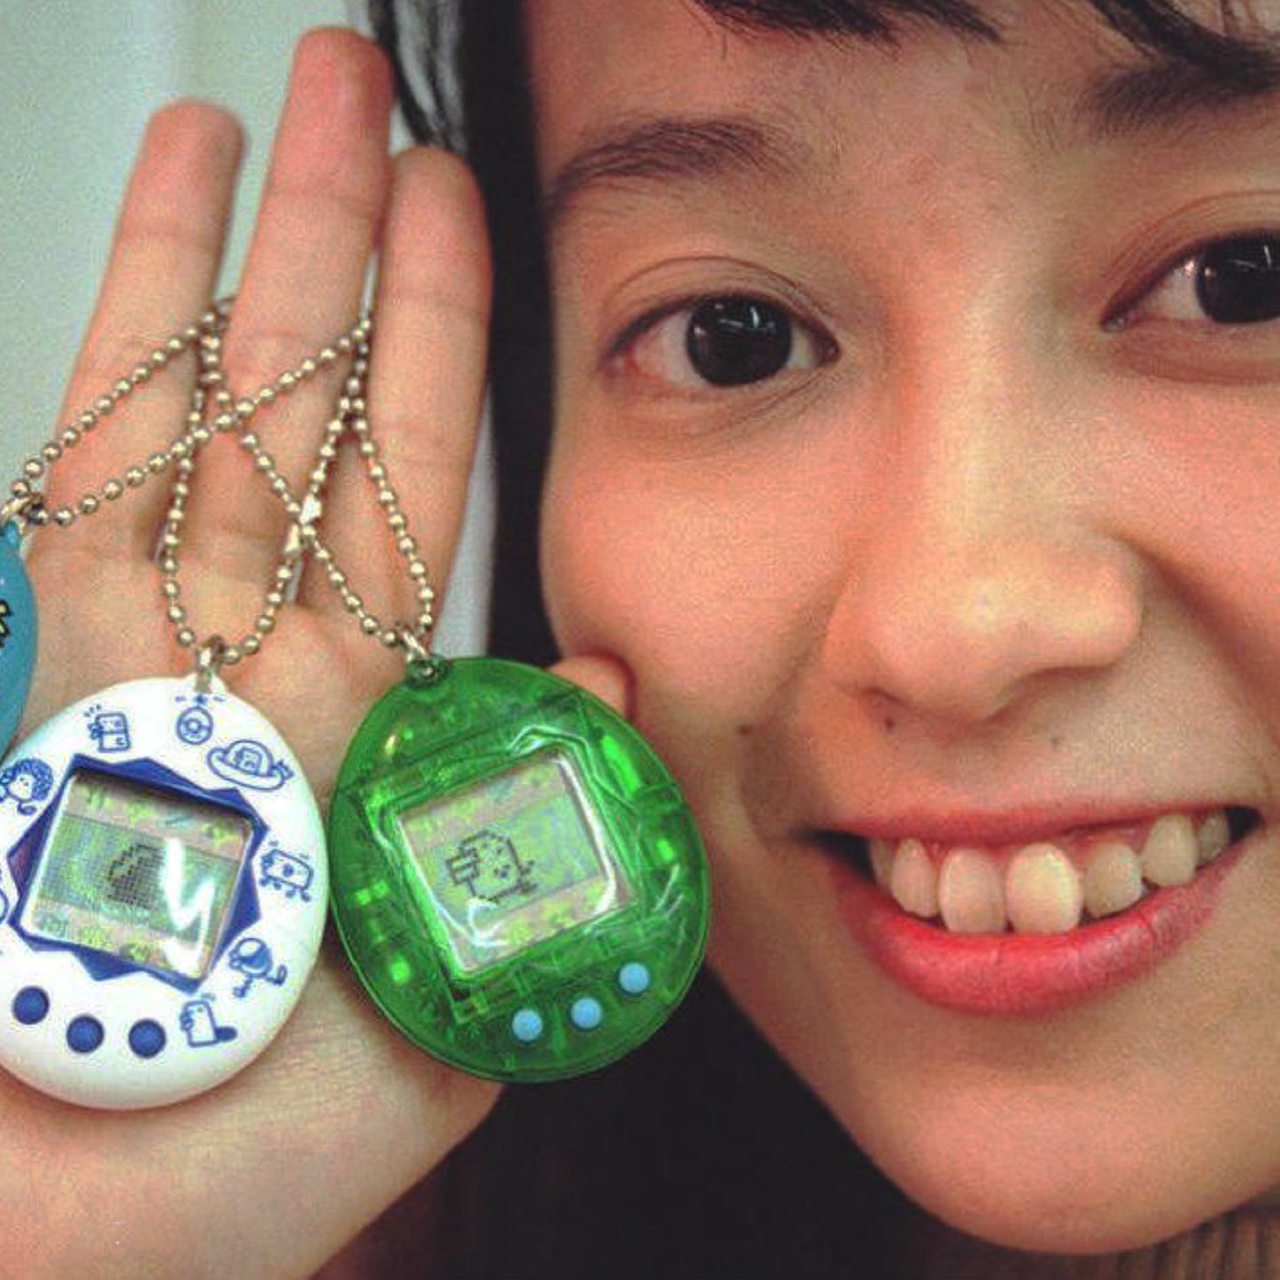 Miki Taneda vom japanischen Spielzeughersteller Bandai Co. hält am Dienstag (28.1.97) in Tokio drei Ei-förmige kleine elektronische Spielzeuge (Tamagotchi) in der Hand. 